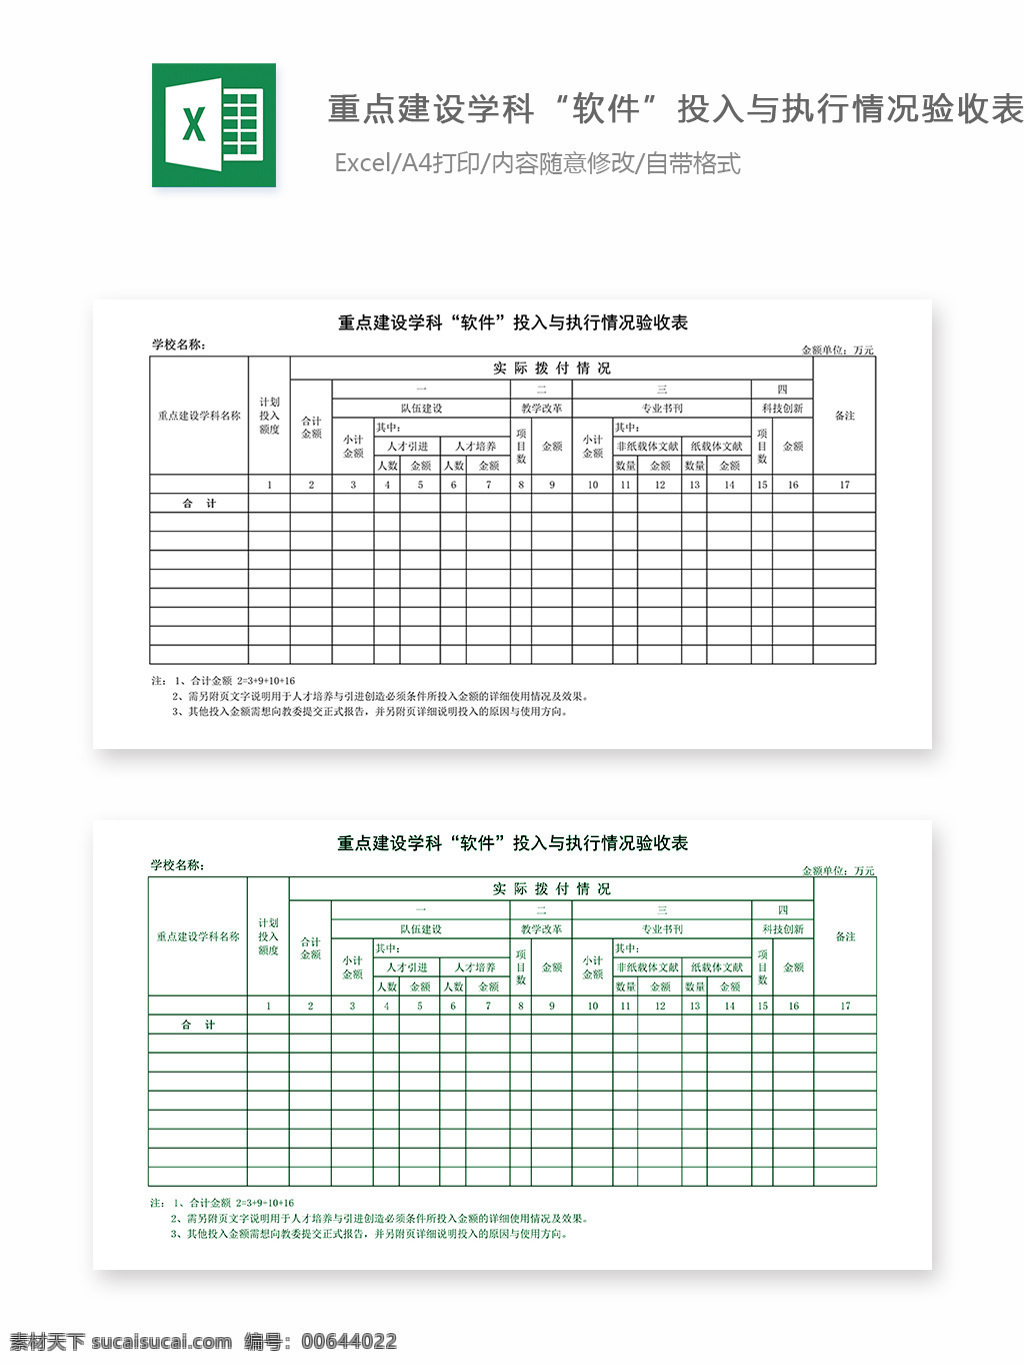 重点建设 学科 软件 投入 执行 情况 验收 表 表格 表格模板 表格设计 图表 验收表